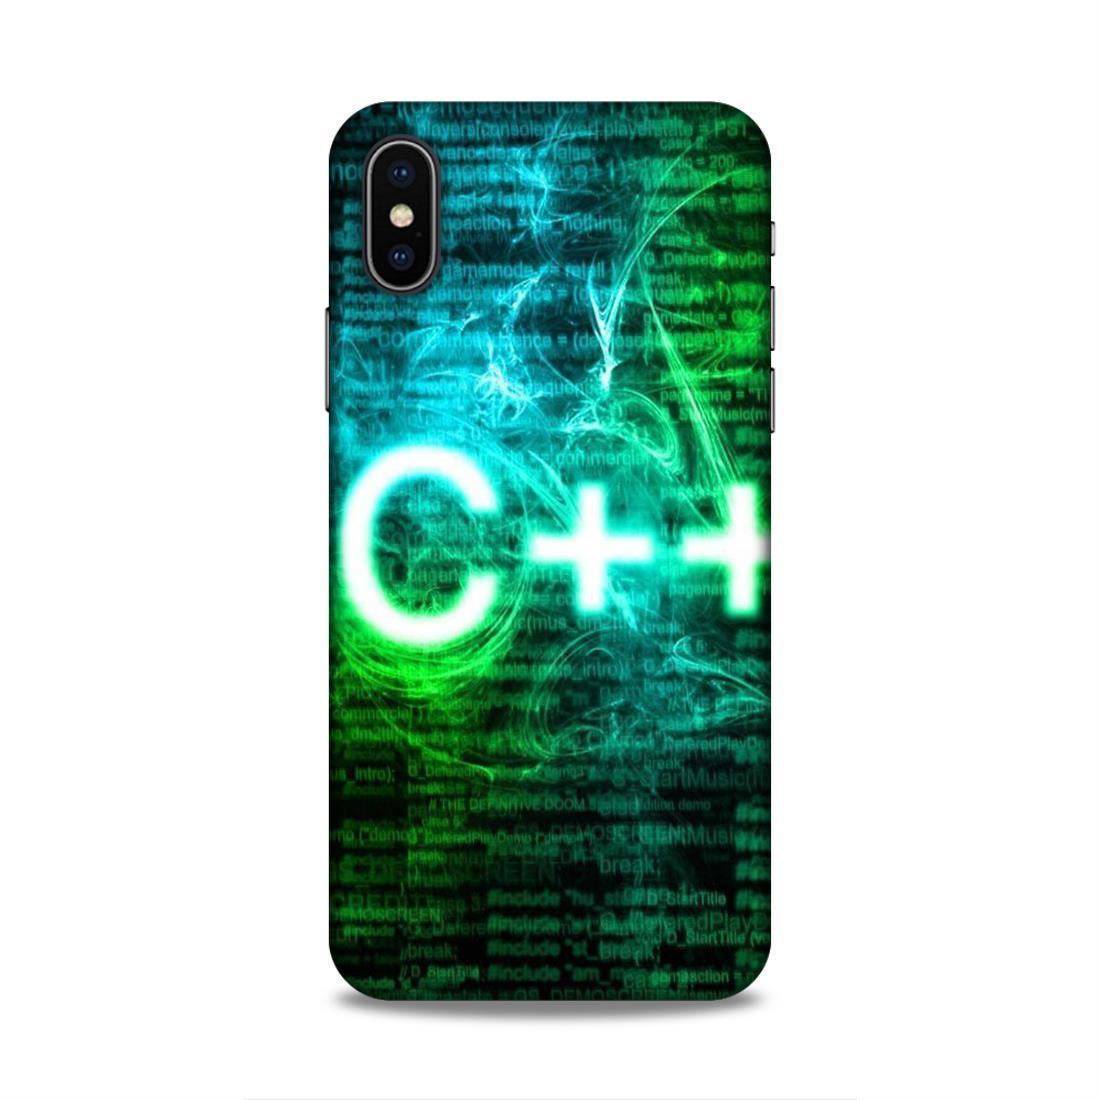 C++ Language iPhone XS Phone Back Case